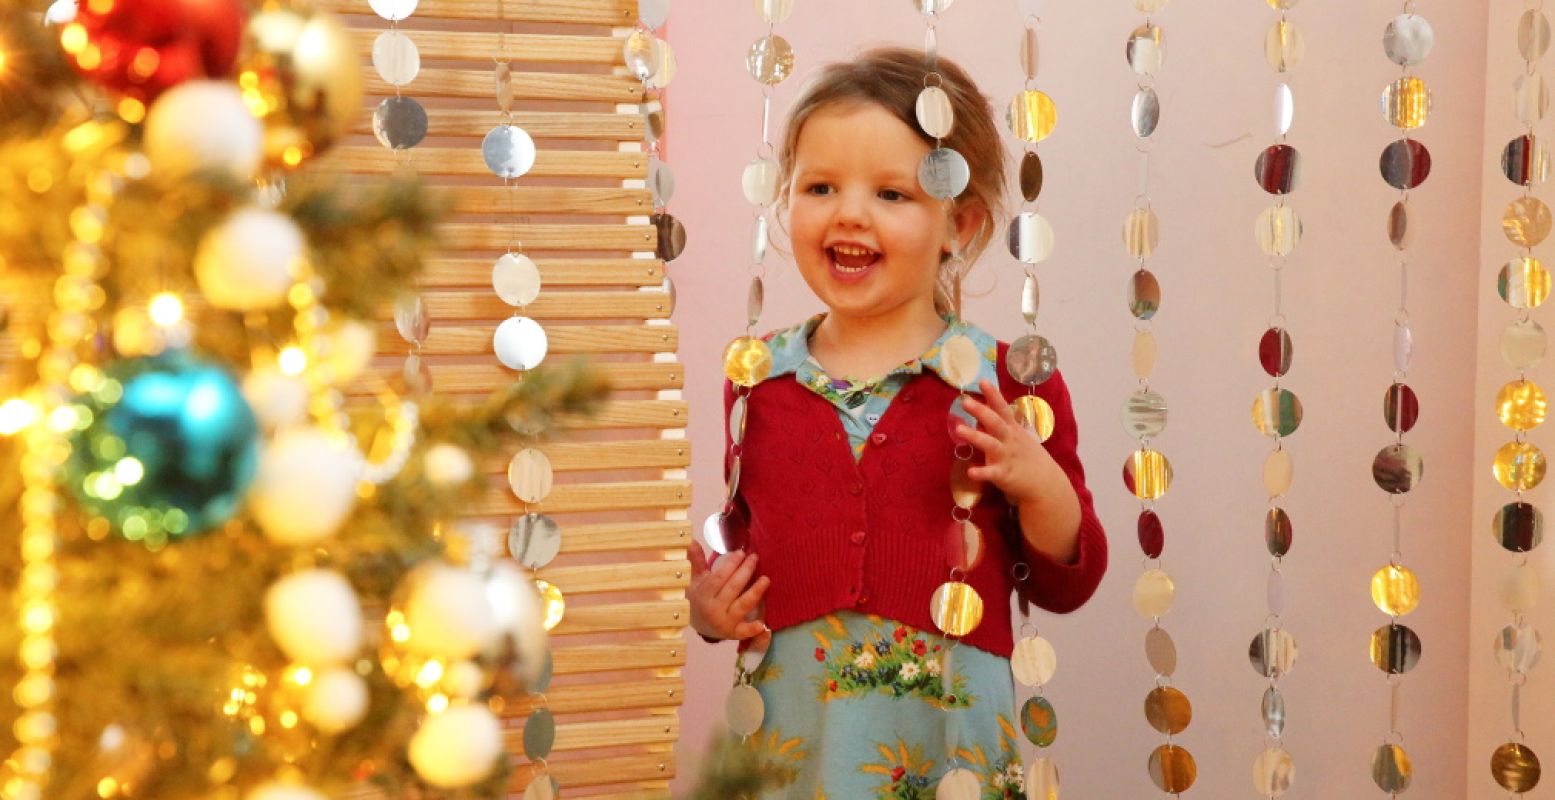 Kinderen bewonderen blij de mooie kerstbomen tijdens Kerstival. Foto: Museum Catharijneconvent © Kris van Veen.